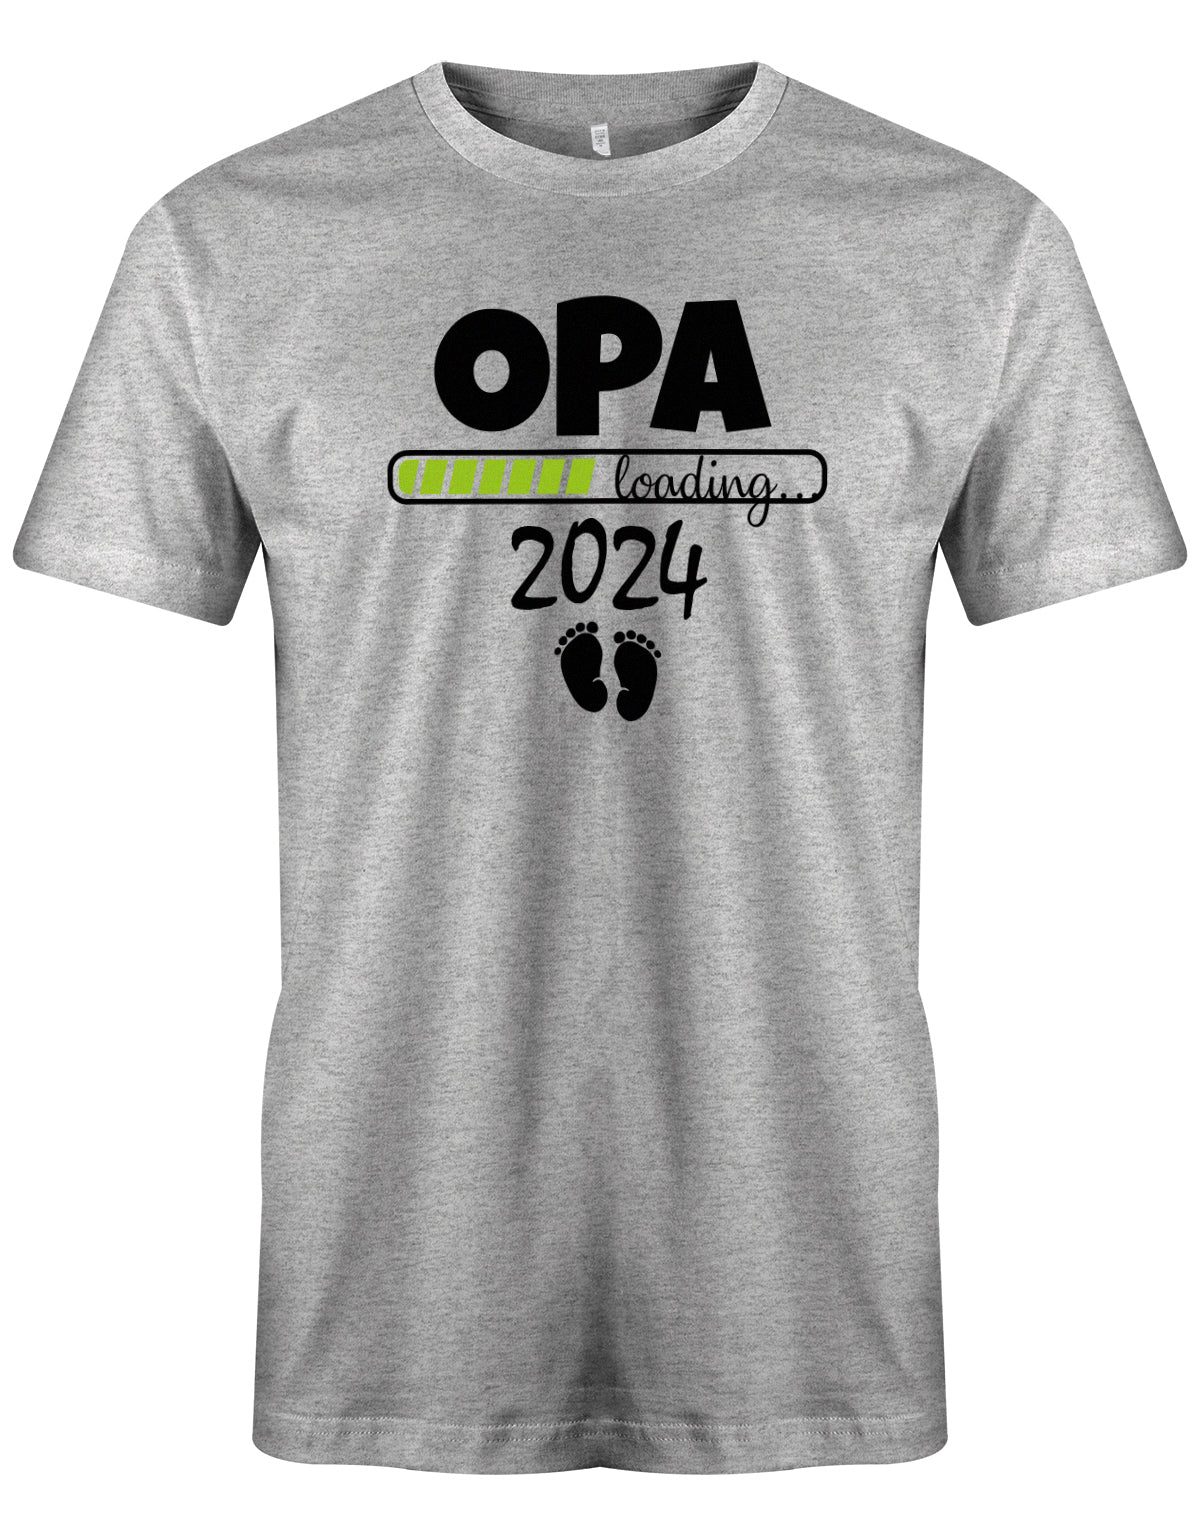 Opa T-Shirt Spruch für werdenden Opa - Opa Loading 2024 Balken lädt. Fußabdrücke Baby. Grau